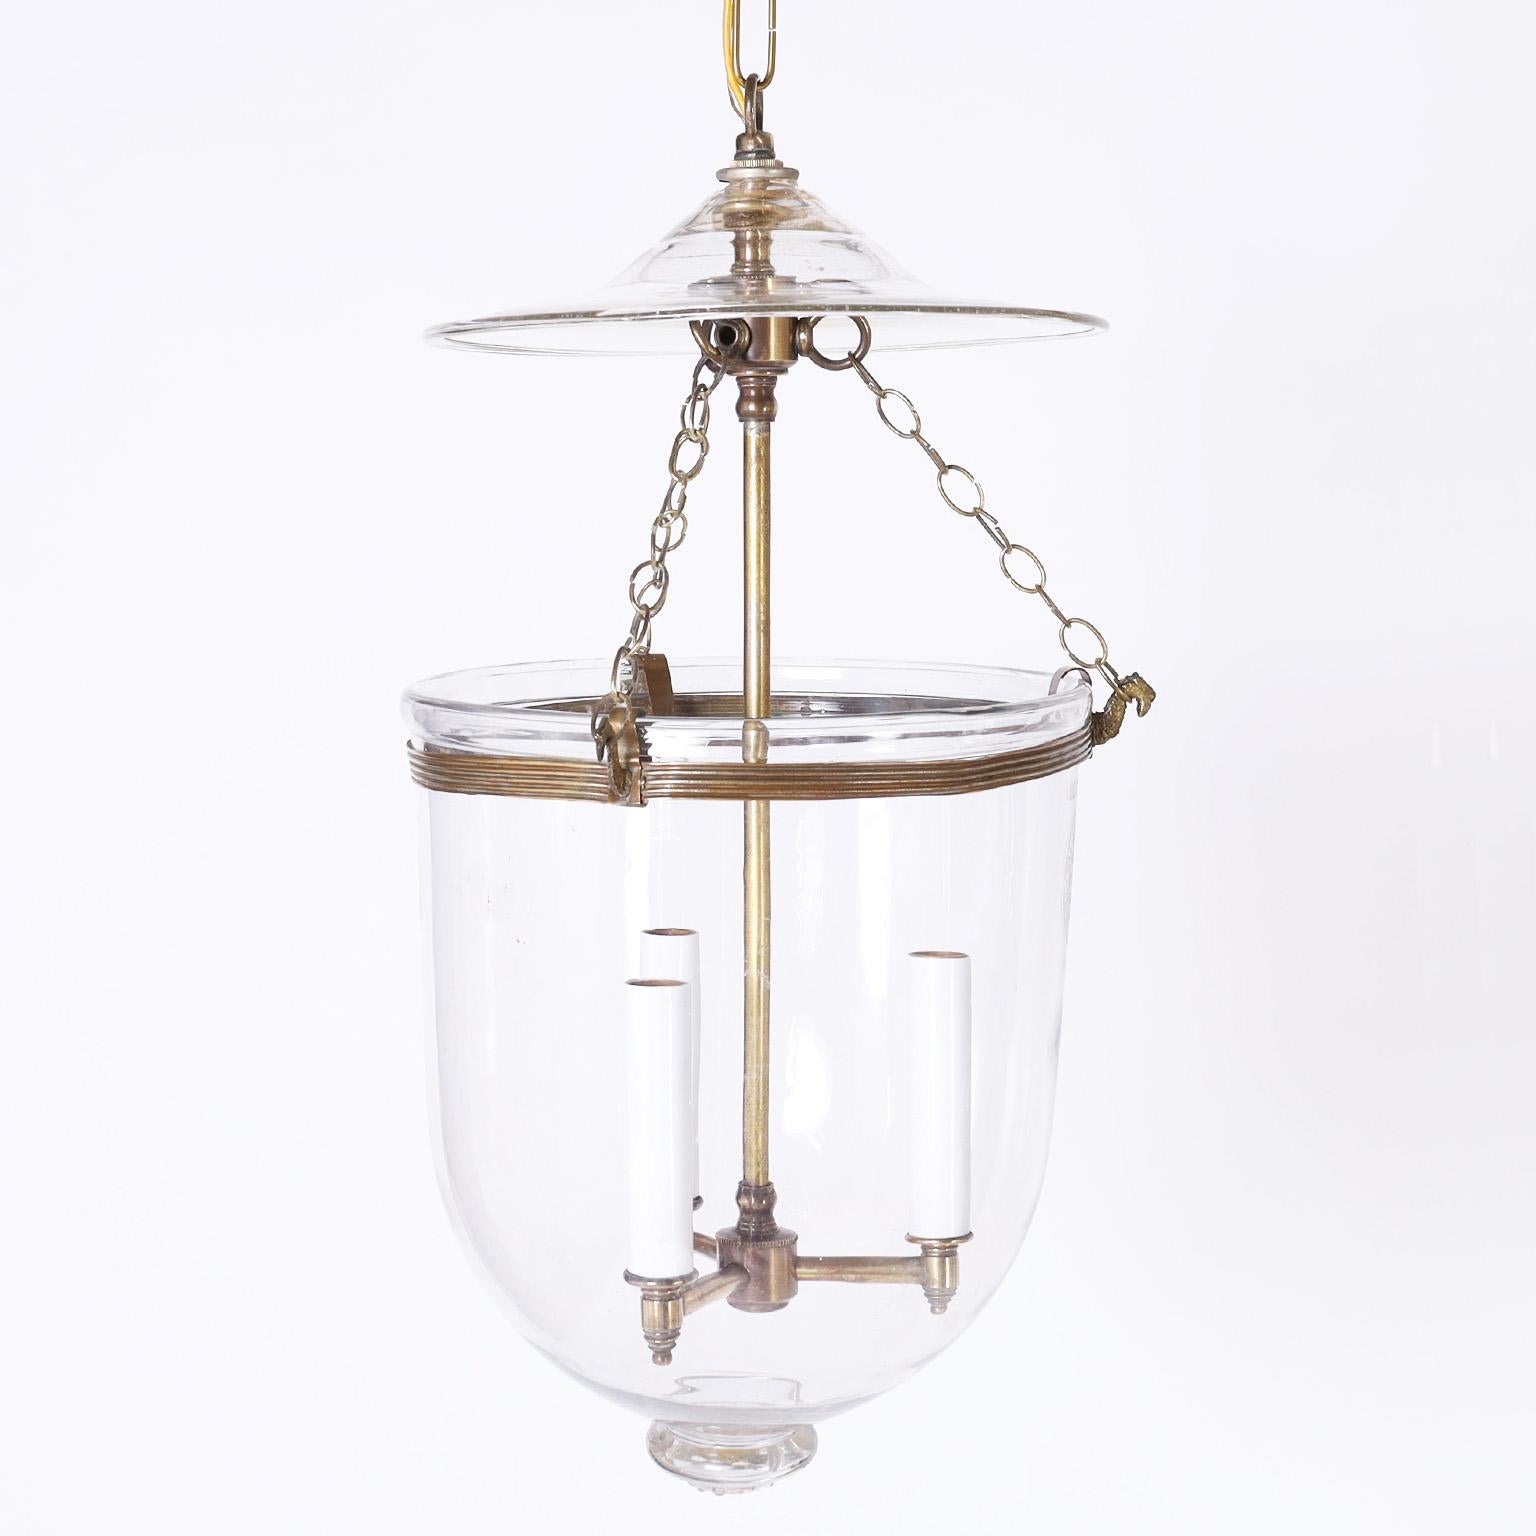 Groupe antique de trois luminaires ou lanternes en forme de cloche de fumée, tous trois fabriqués en verre soufflé à la main, de forme classique, avec des ferrures en laiton. Les deux extrémités sont signées Val St. Lambert. Les prix sont fixés à